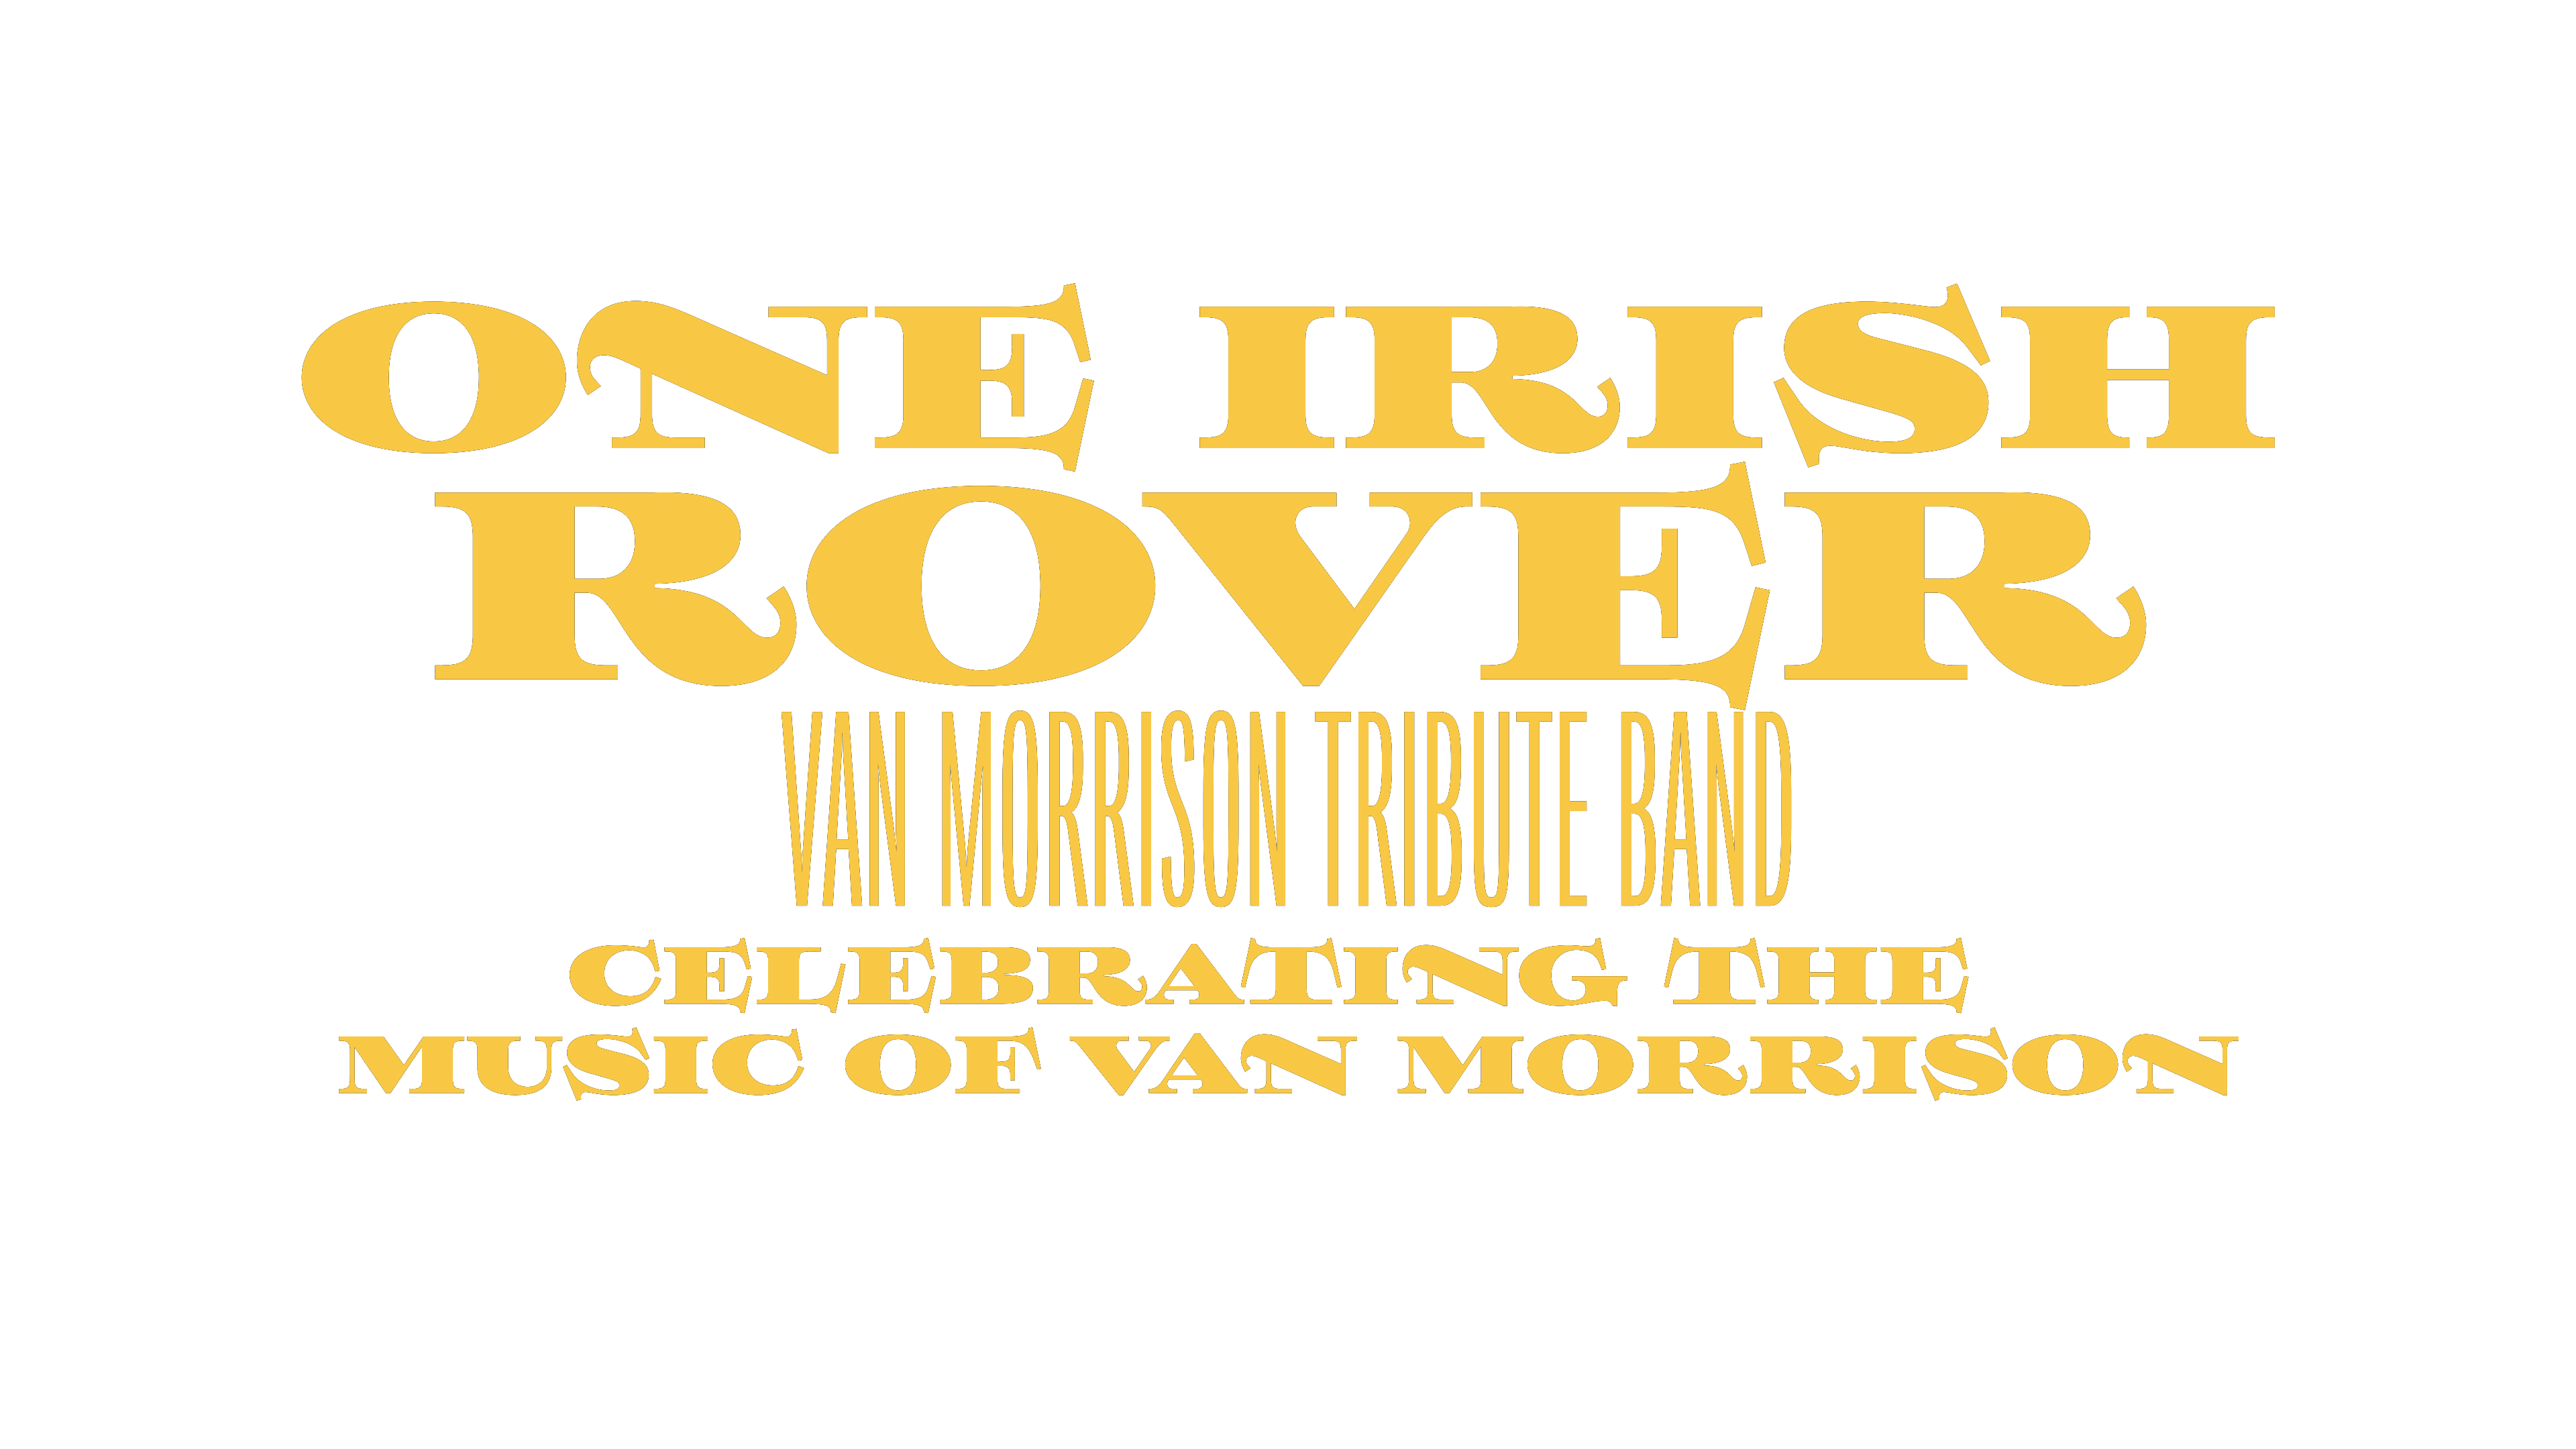 One Irish Rover Band